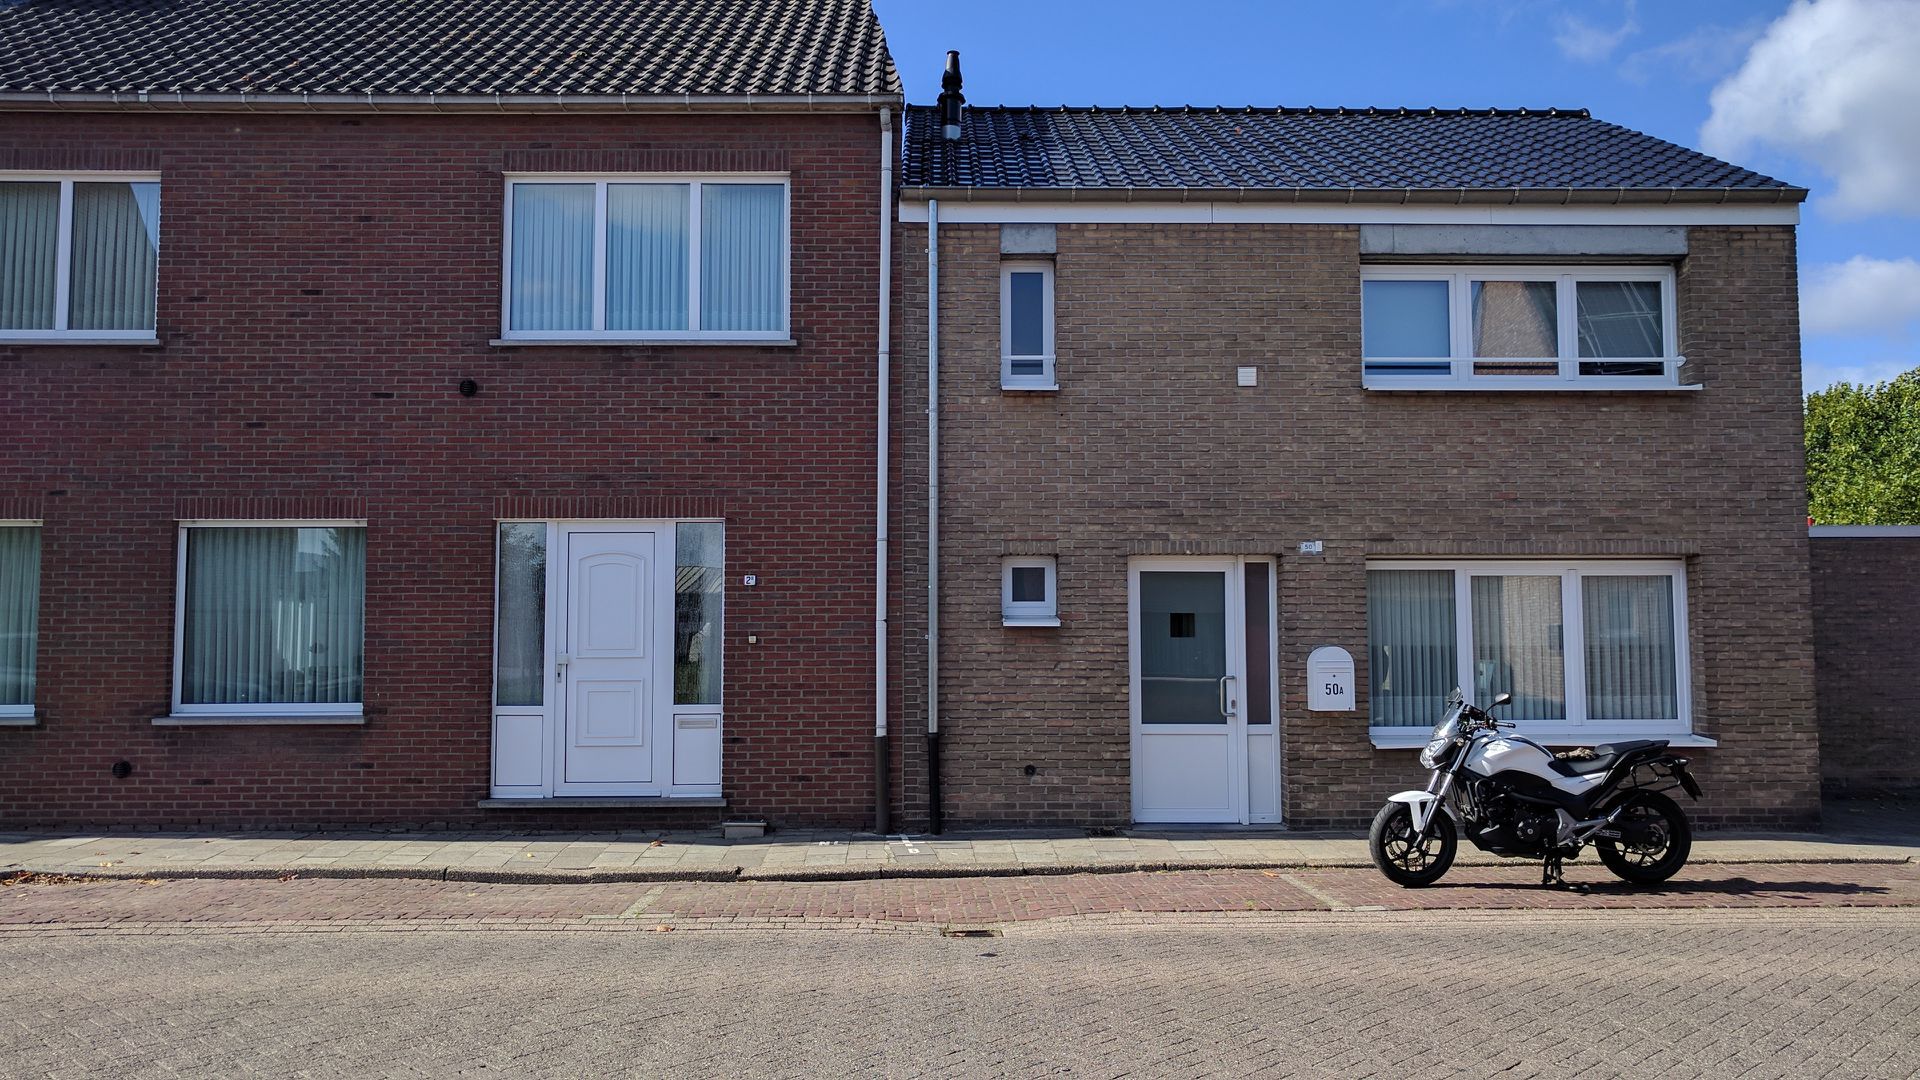 左边比利时人家，右边荷兰房子